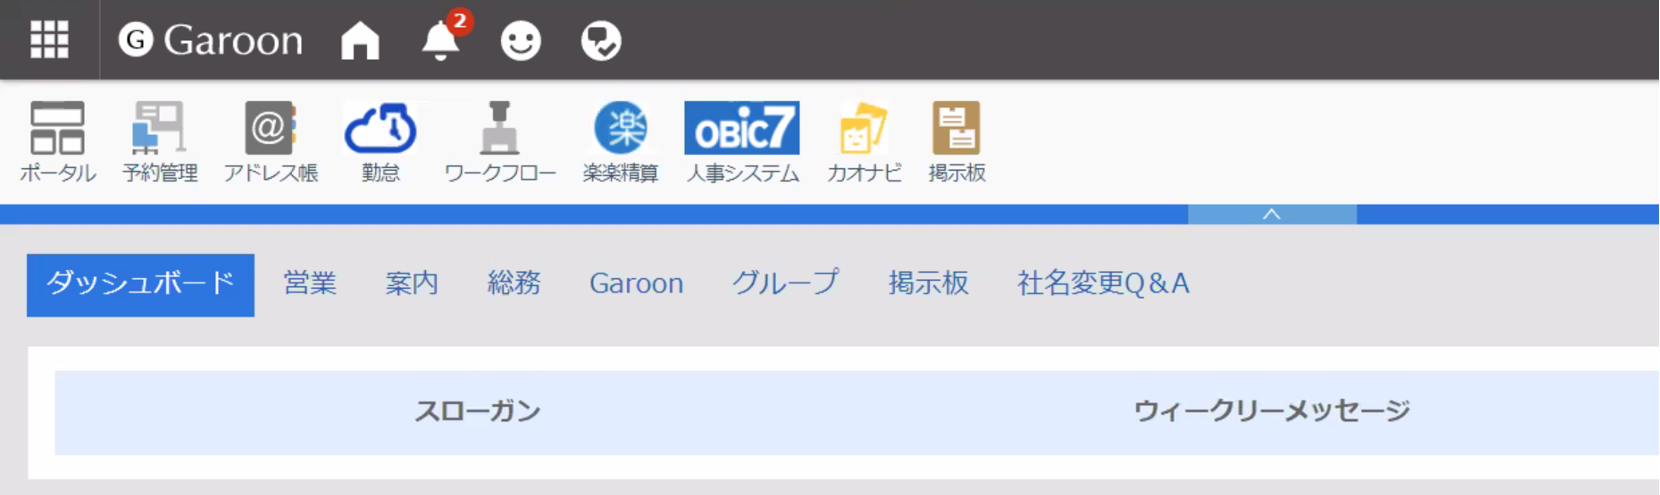 株式会社ISSリアライズのGaroon画面ヘッダー 「楽々精算」、「OBIC7」、「カオナビ」などのアイコンが配置されている